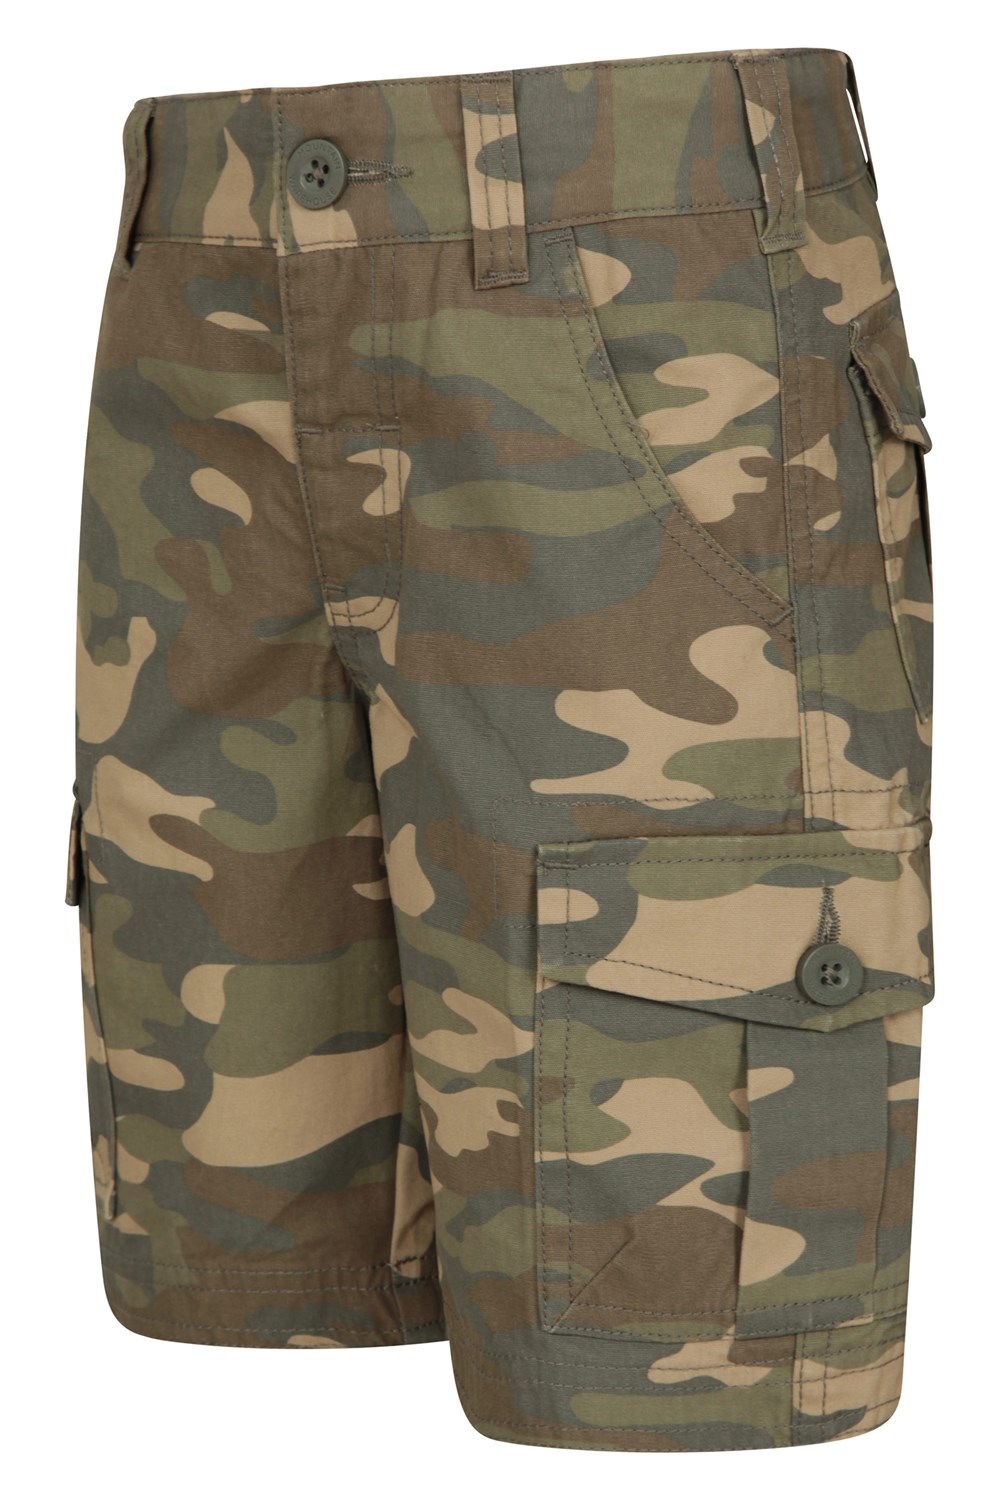 Mountain Warehouse Kids Camo Cargo Shorts - 100% Cotton Comfortable ...